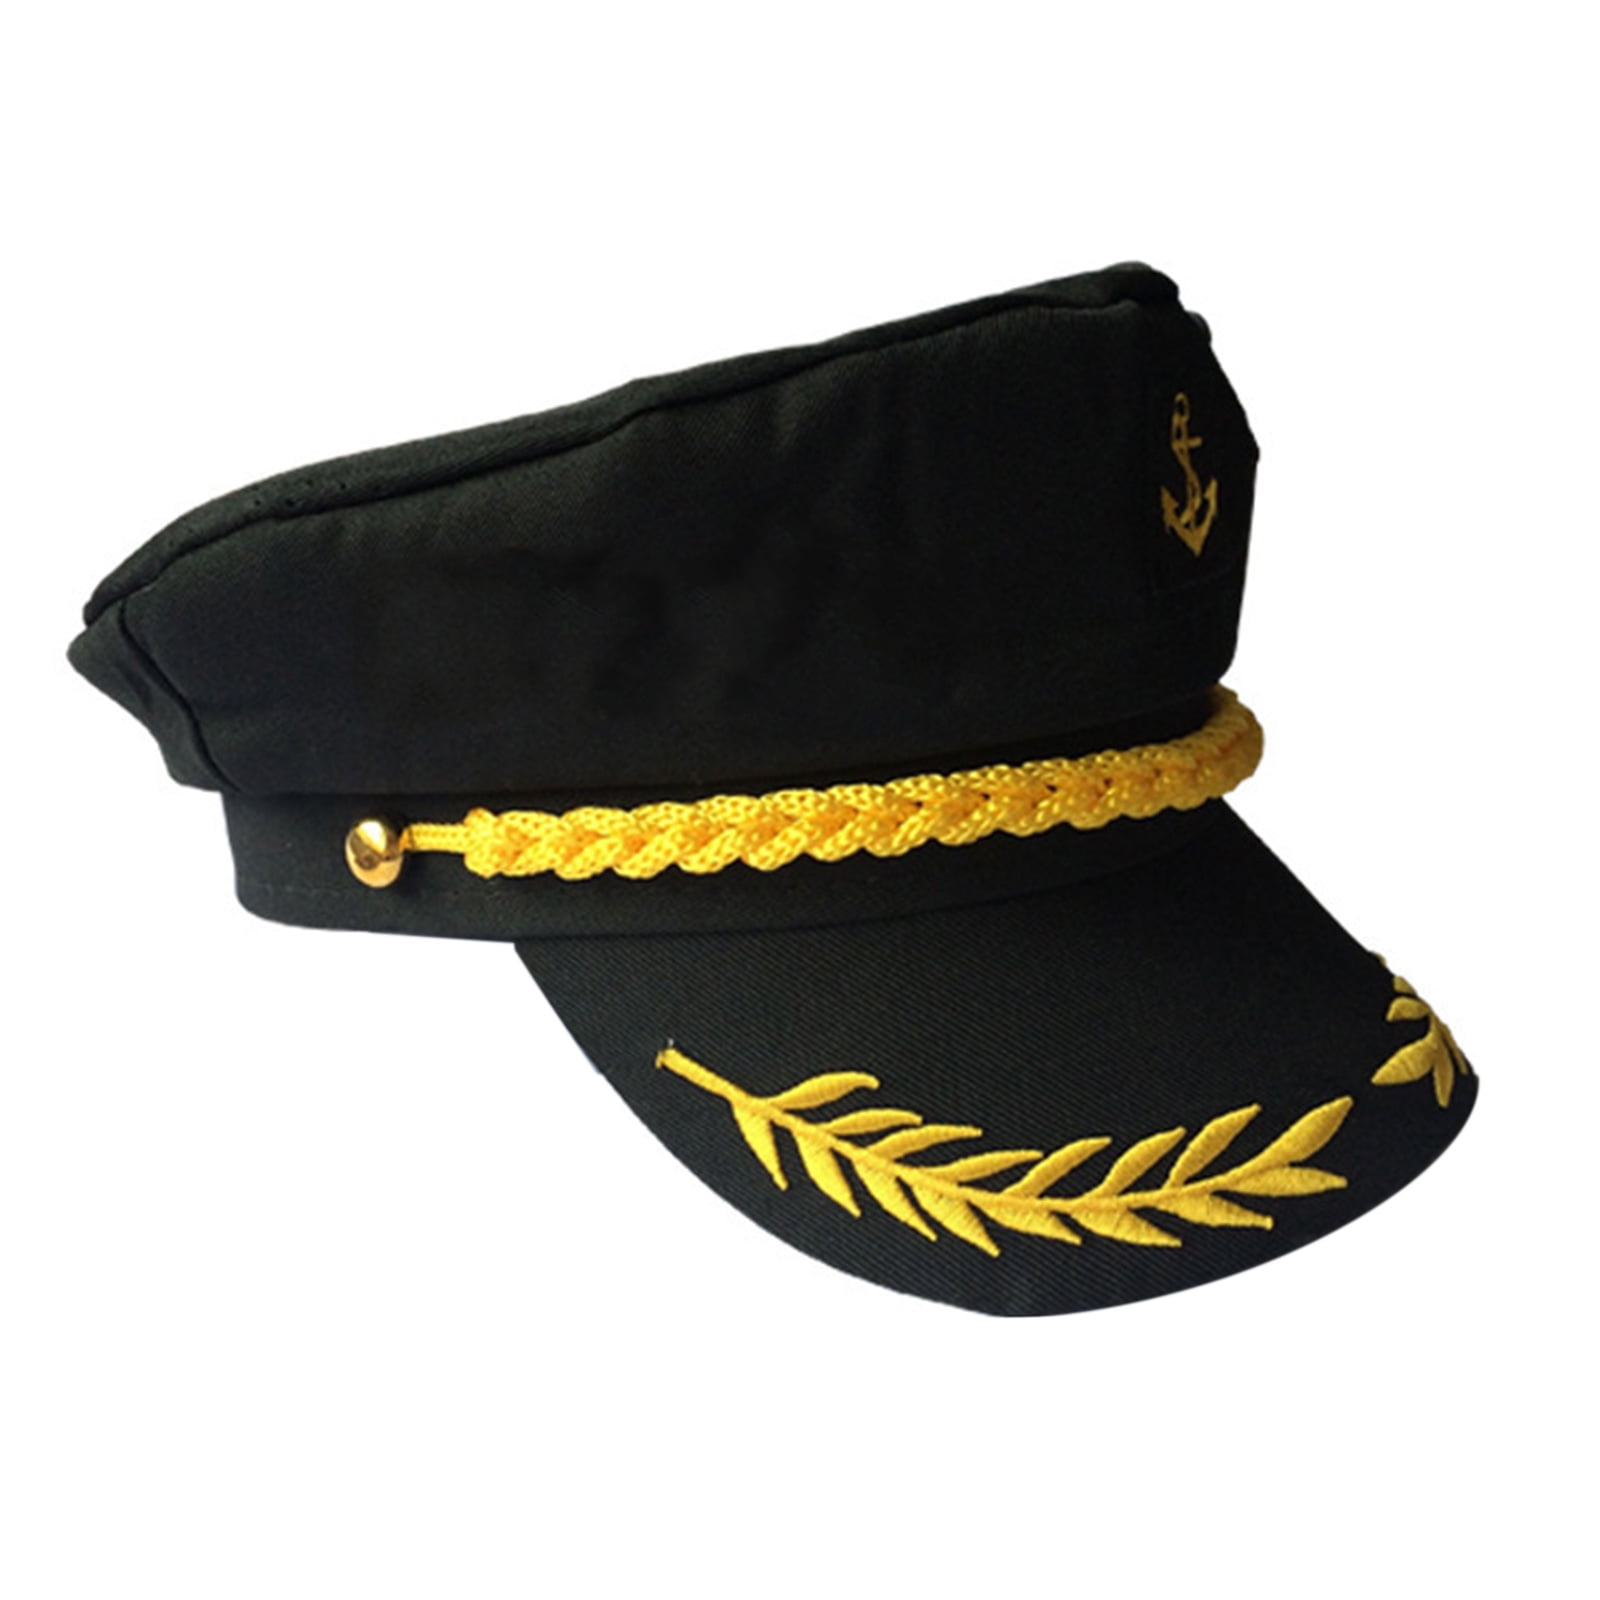 JNANEEI Sailor Hat Sailor Captain Costume Sailor Cap Men Yacht Captain Hat  Navy Marine Hat Funny Party Hats Costume Accessories 